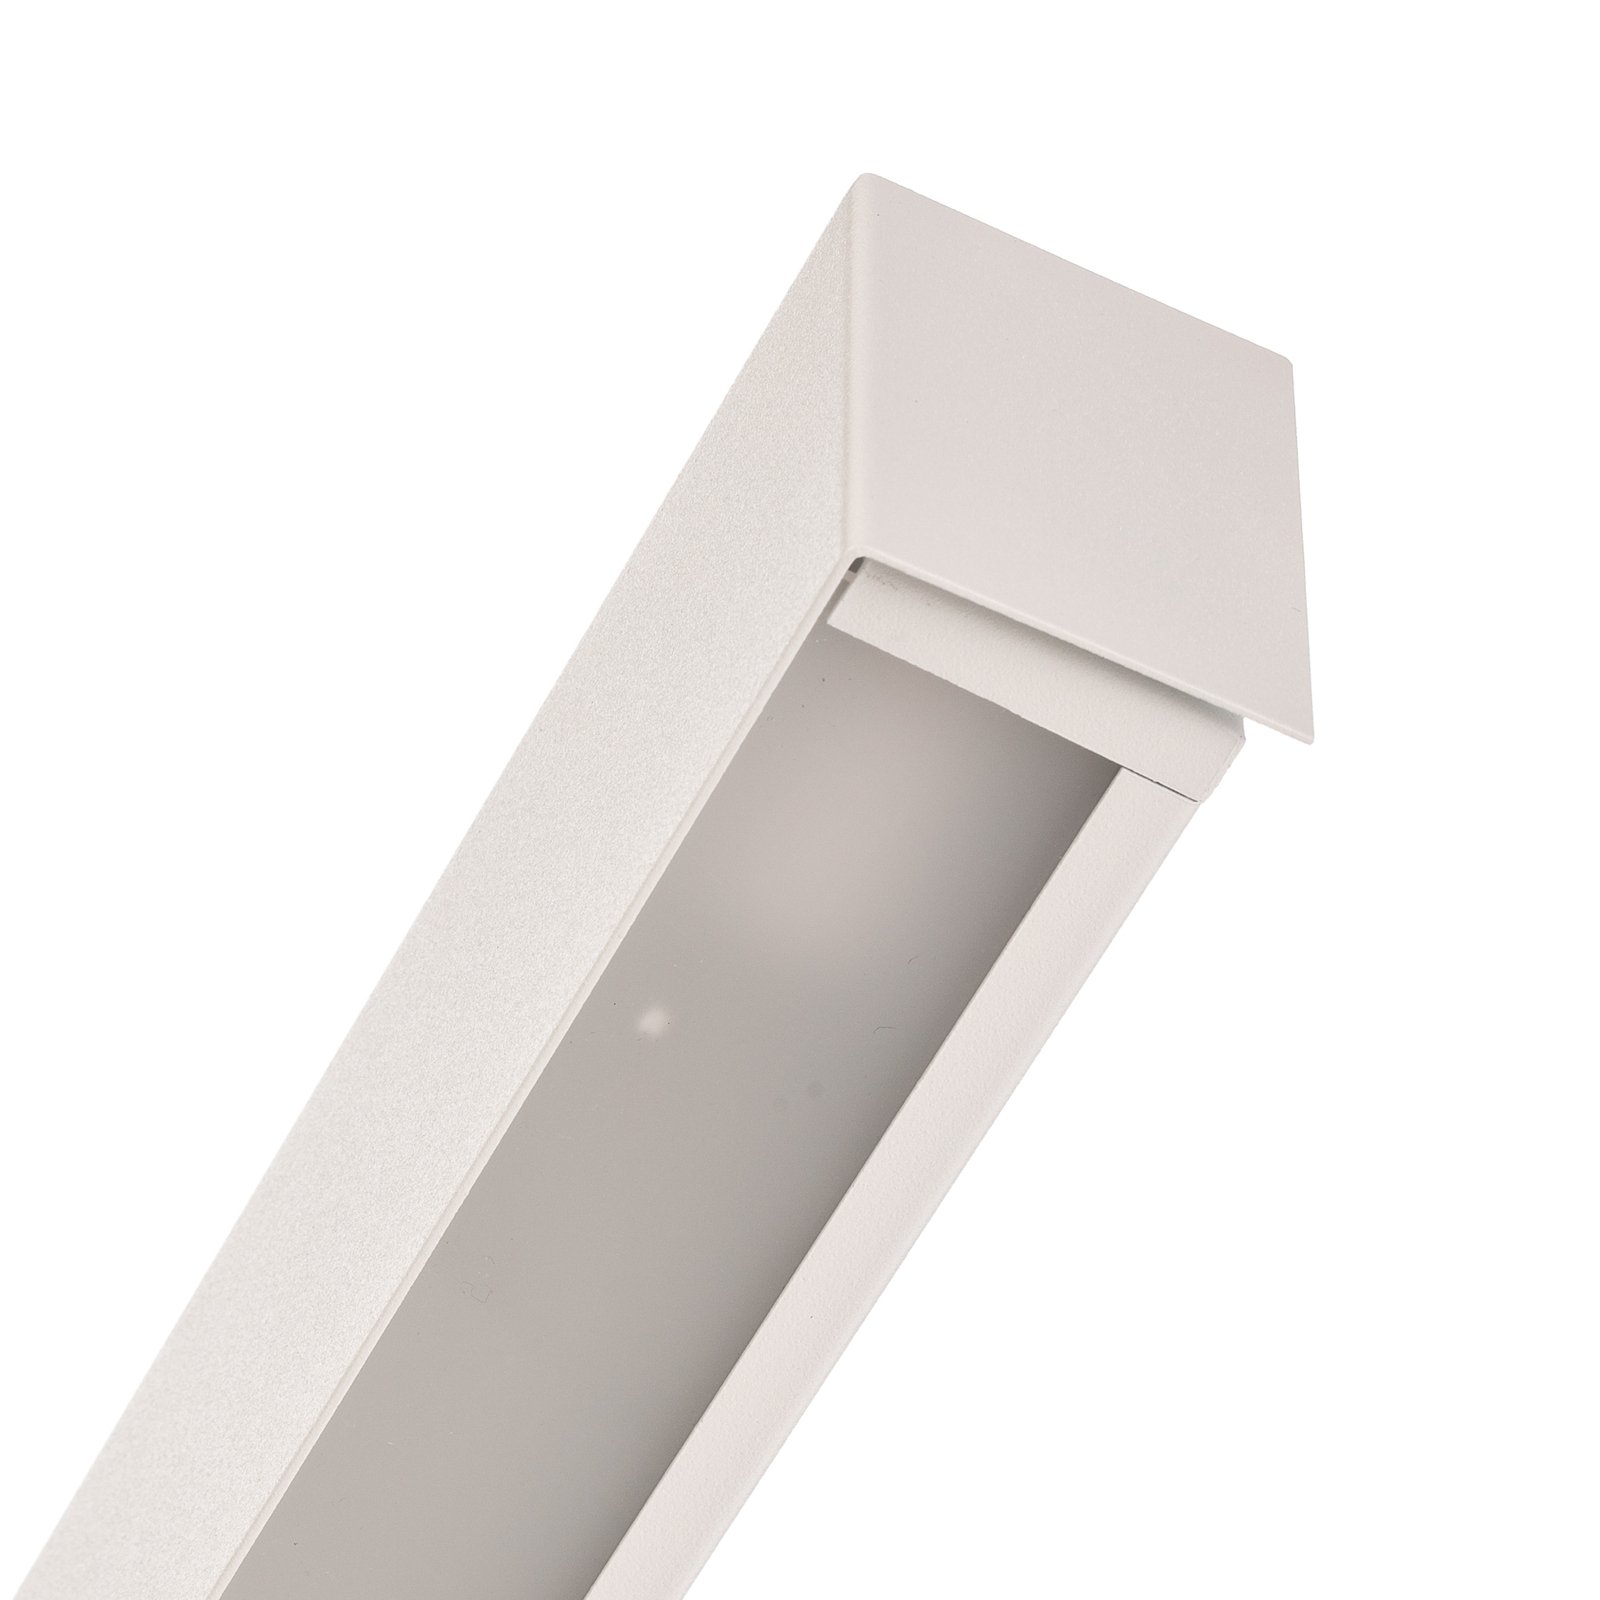 Rovné nástěnné svítidlo L, 122 cm, bílé